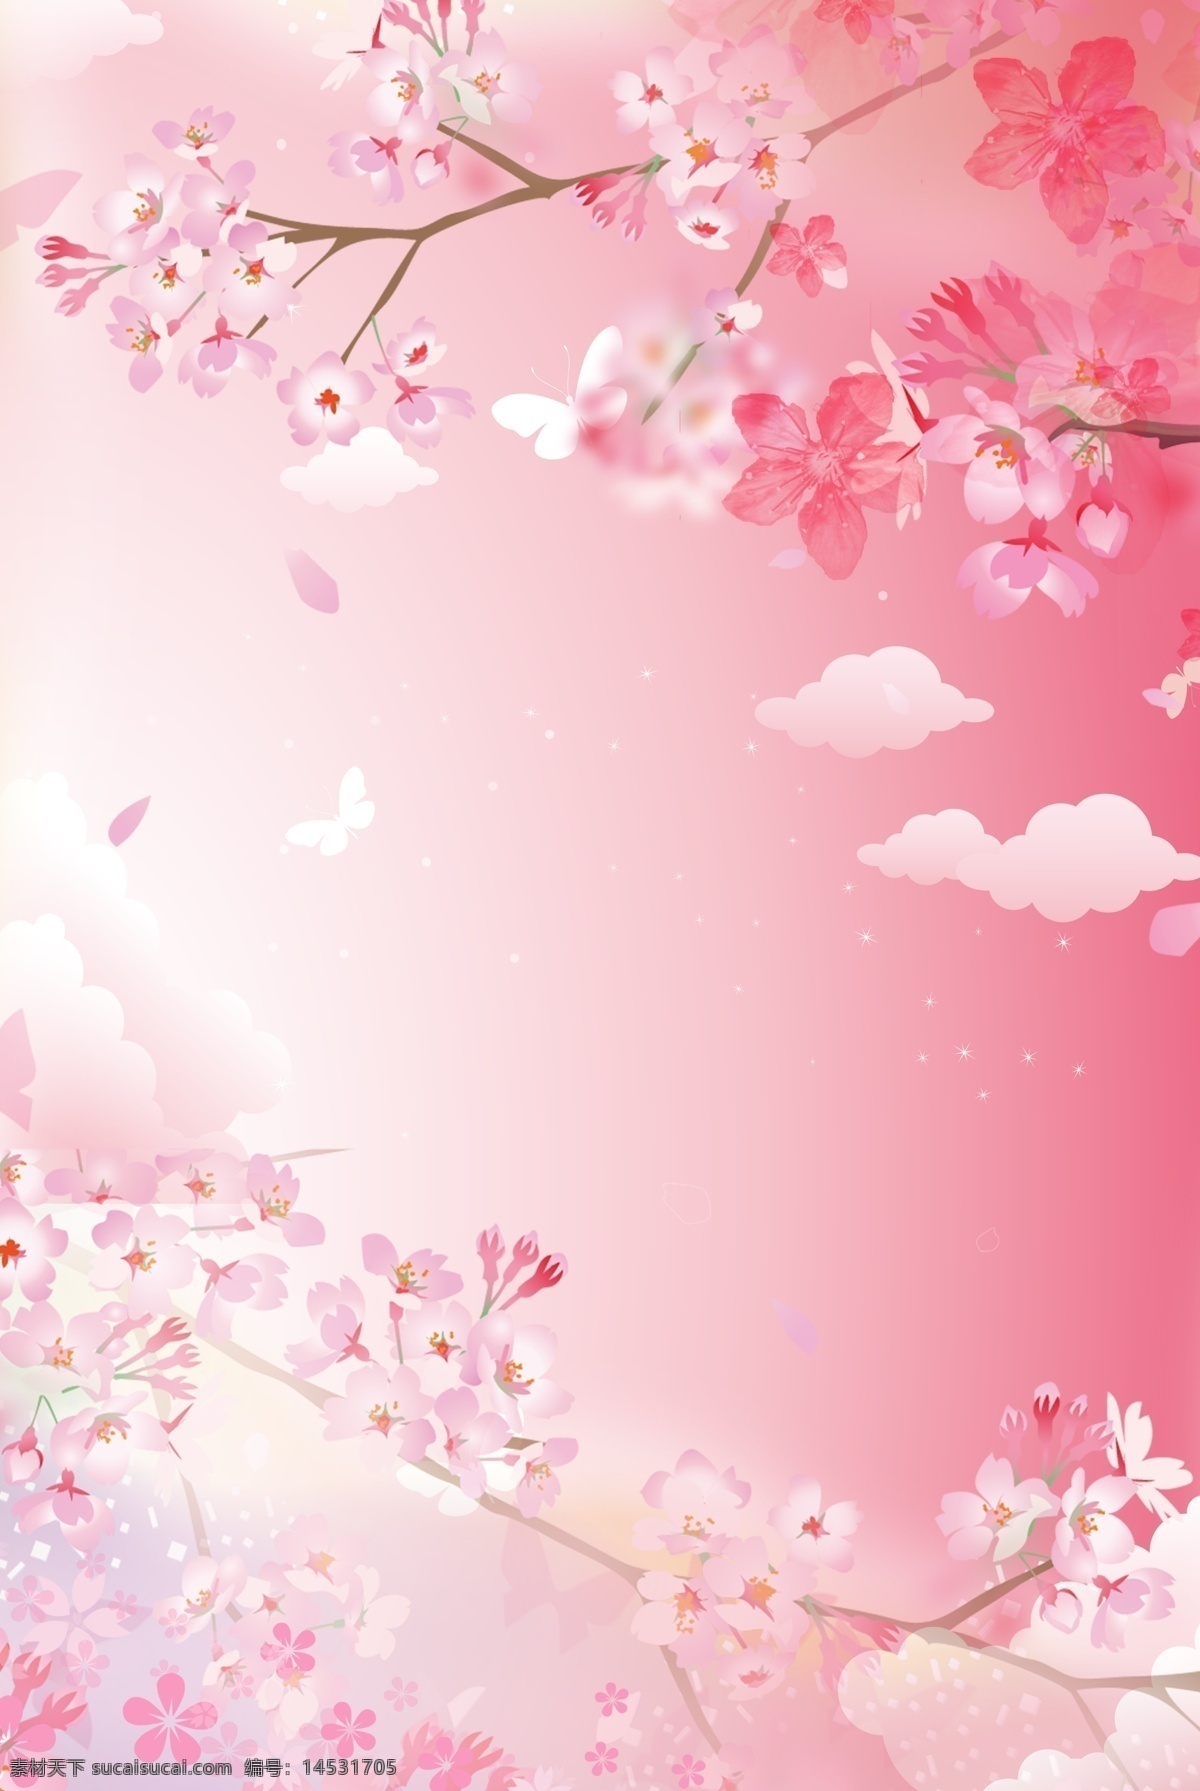 粉色 简约 唯美 樱花 风景 背景 扁平 手绘 卡通 矢量 小清新 浪漫